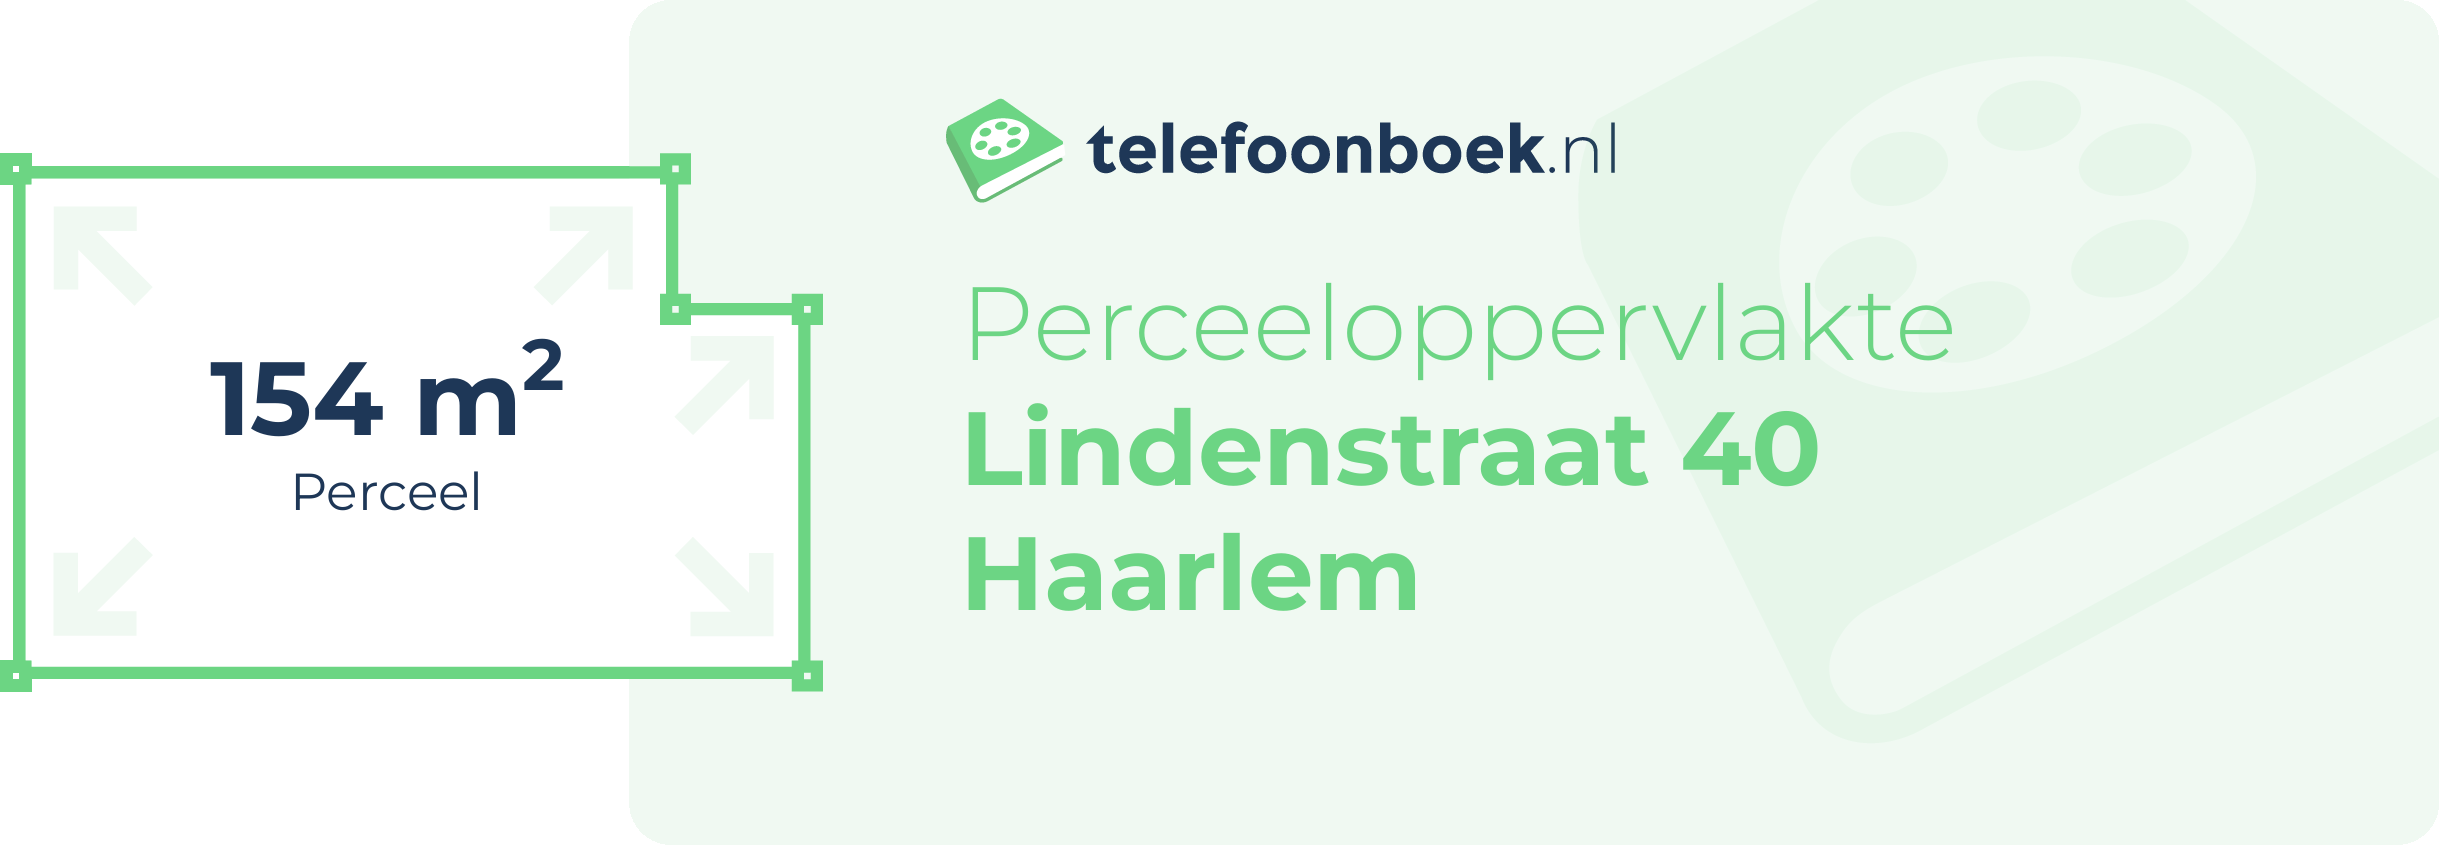 Perceeloppervlakte Lindenstraat 40 Haarlem